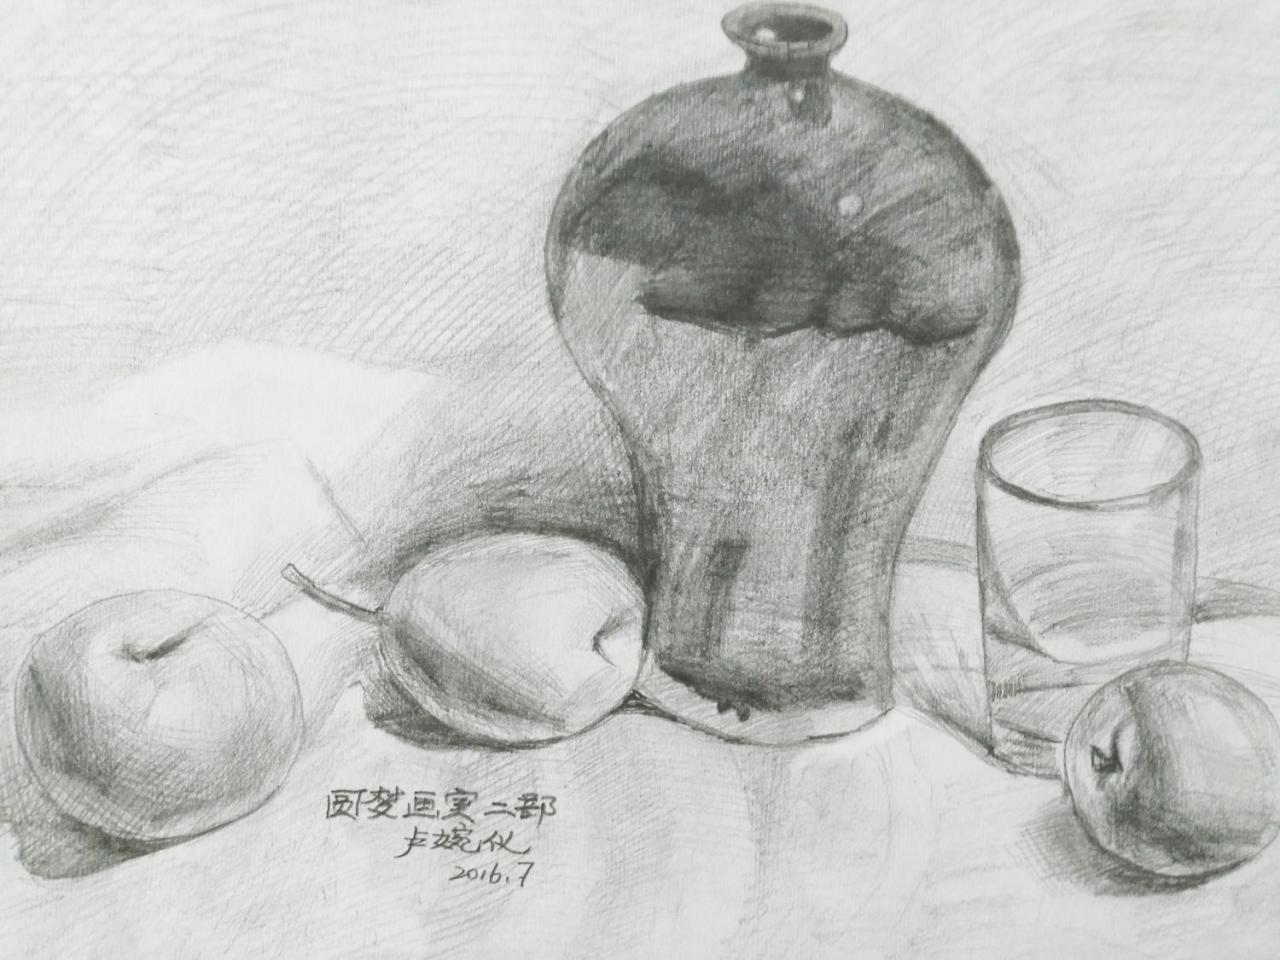 陶罐、玻璃杯、苹果、梨 静物素描 卢婉仪画